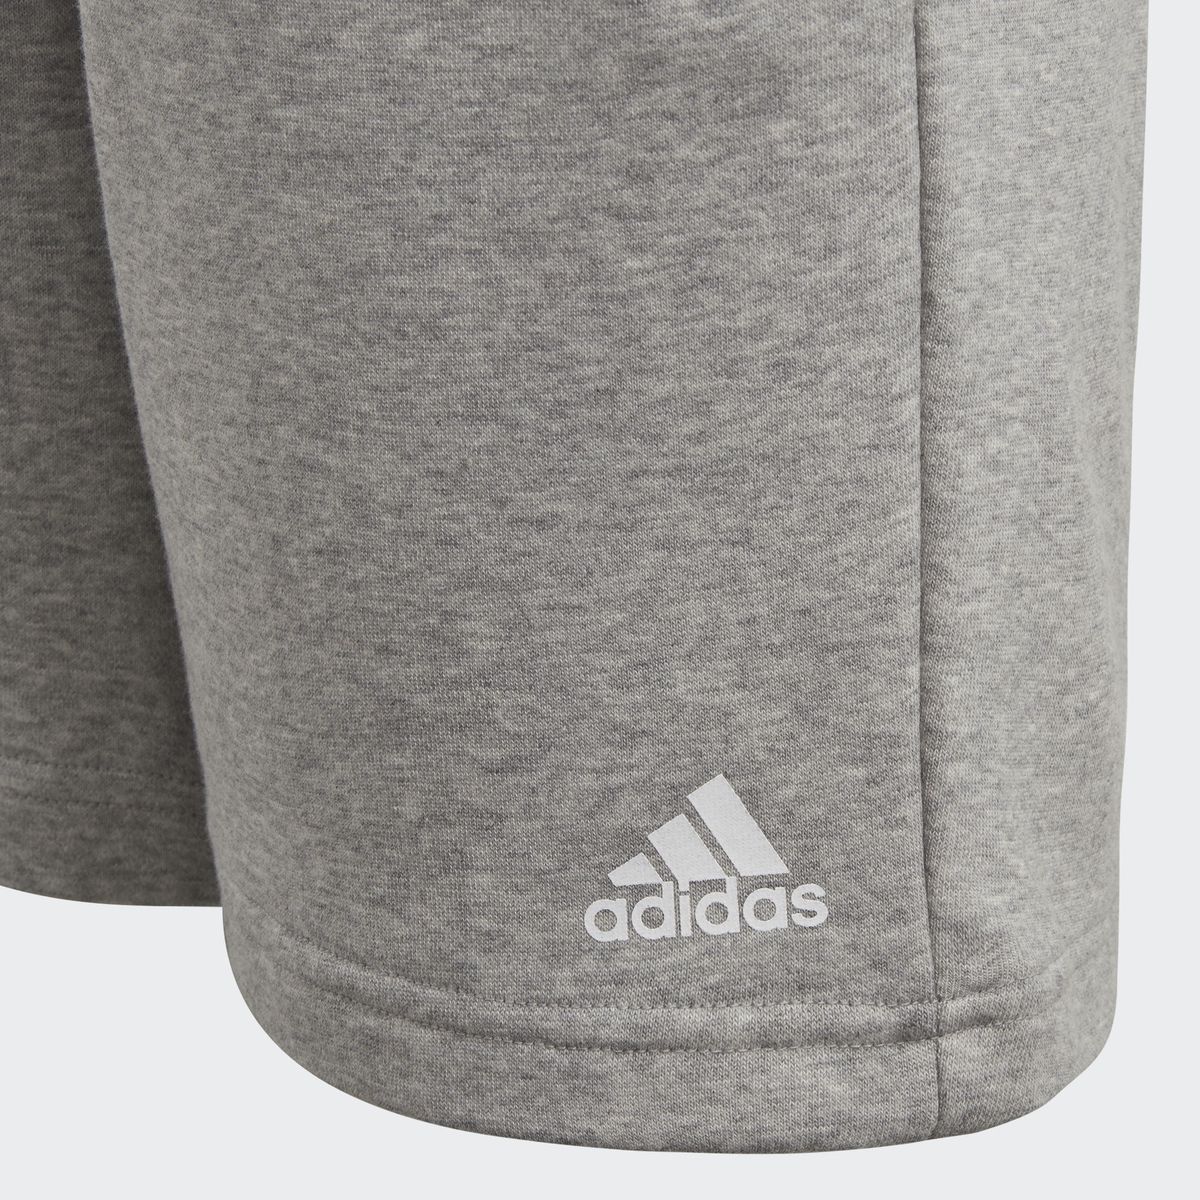    Adidas Yb Logo Short, : . CF6534.  140